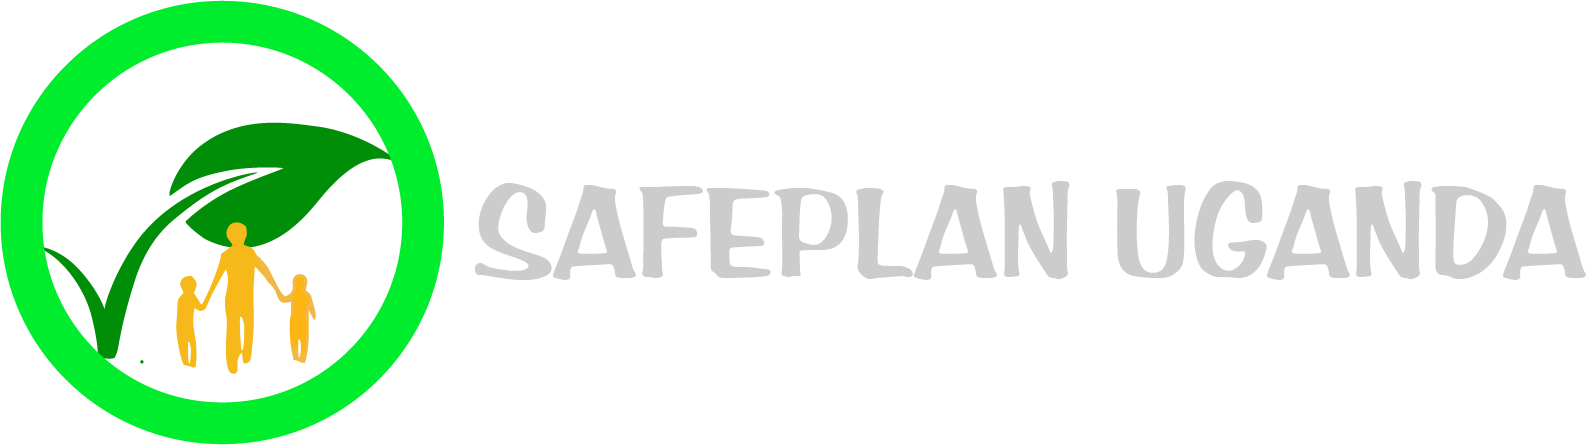 Safeplan News